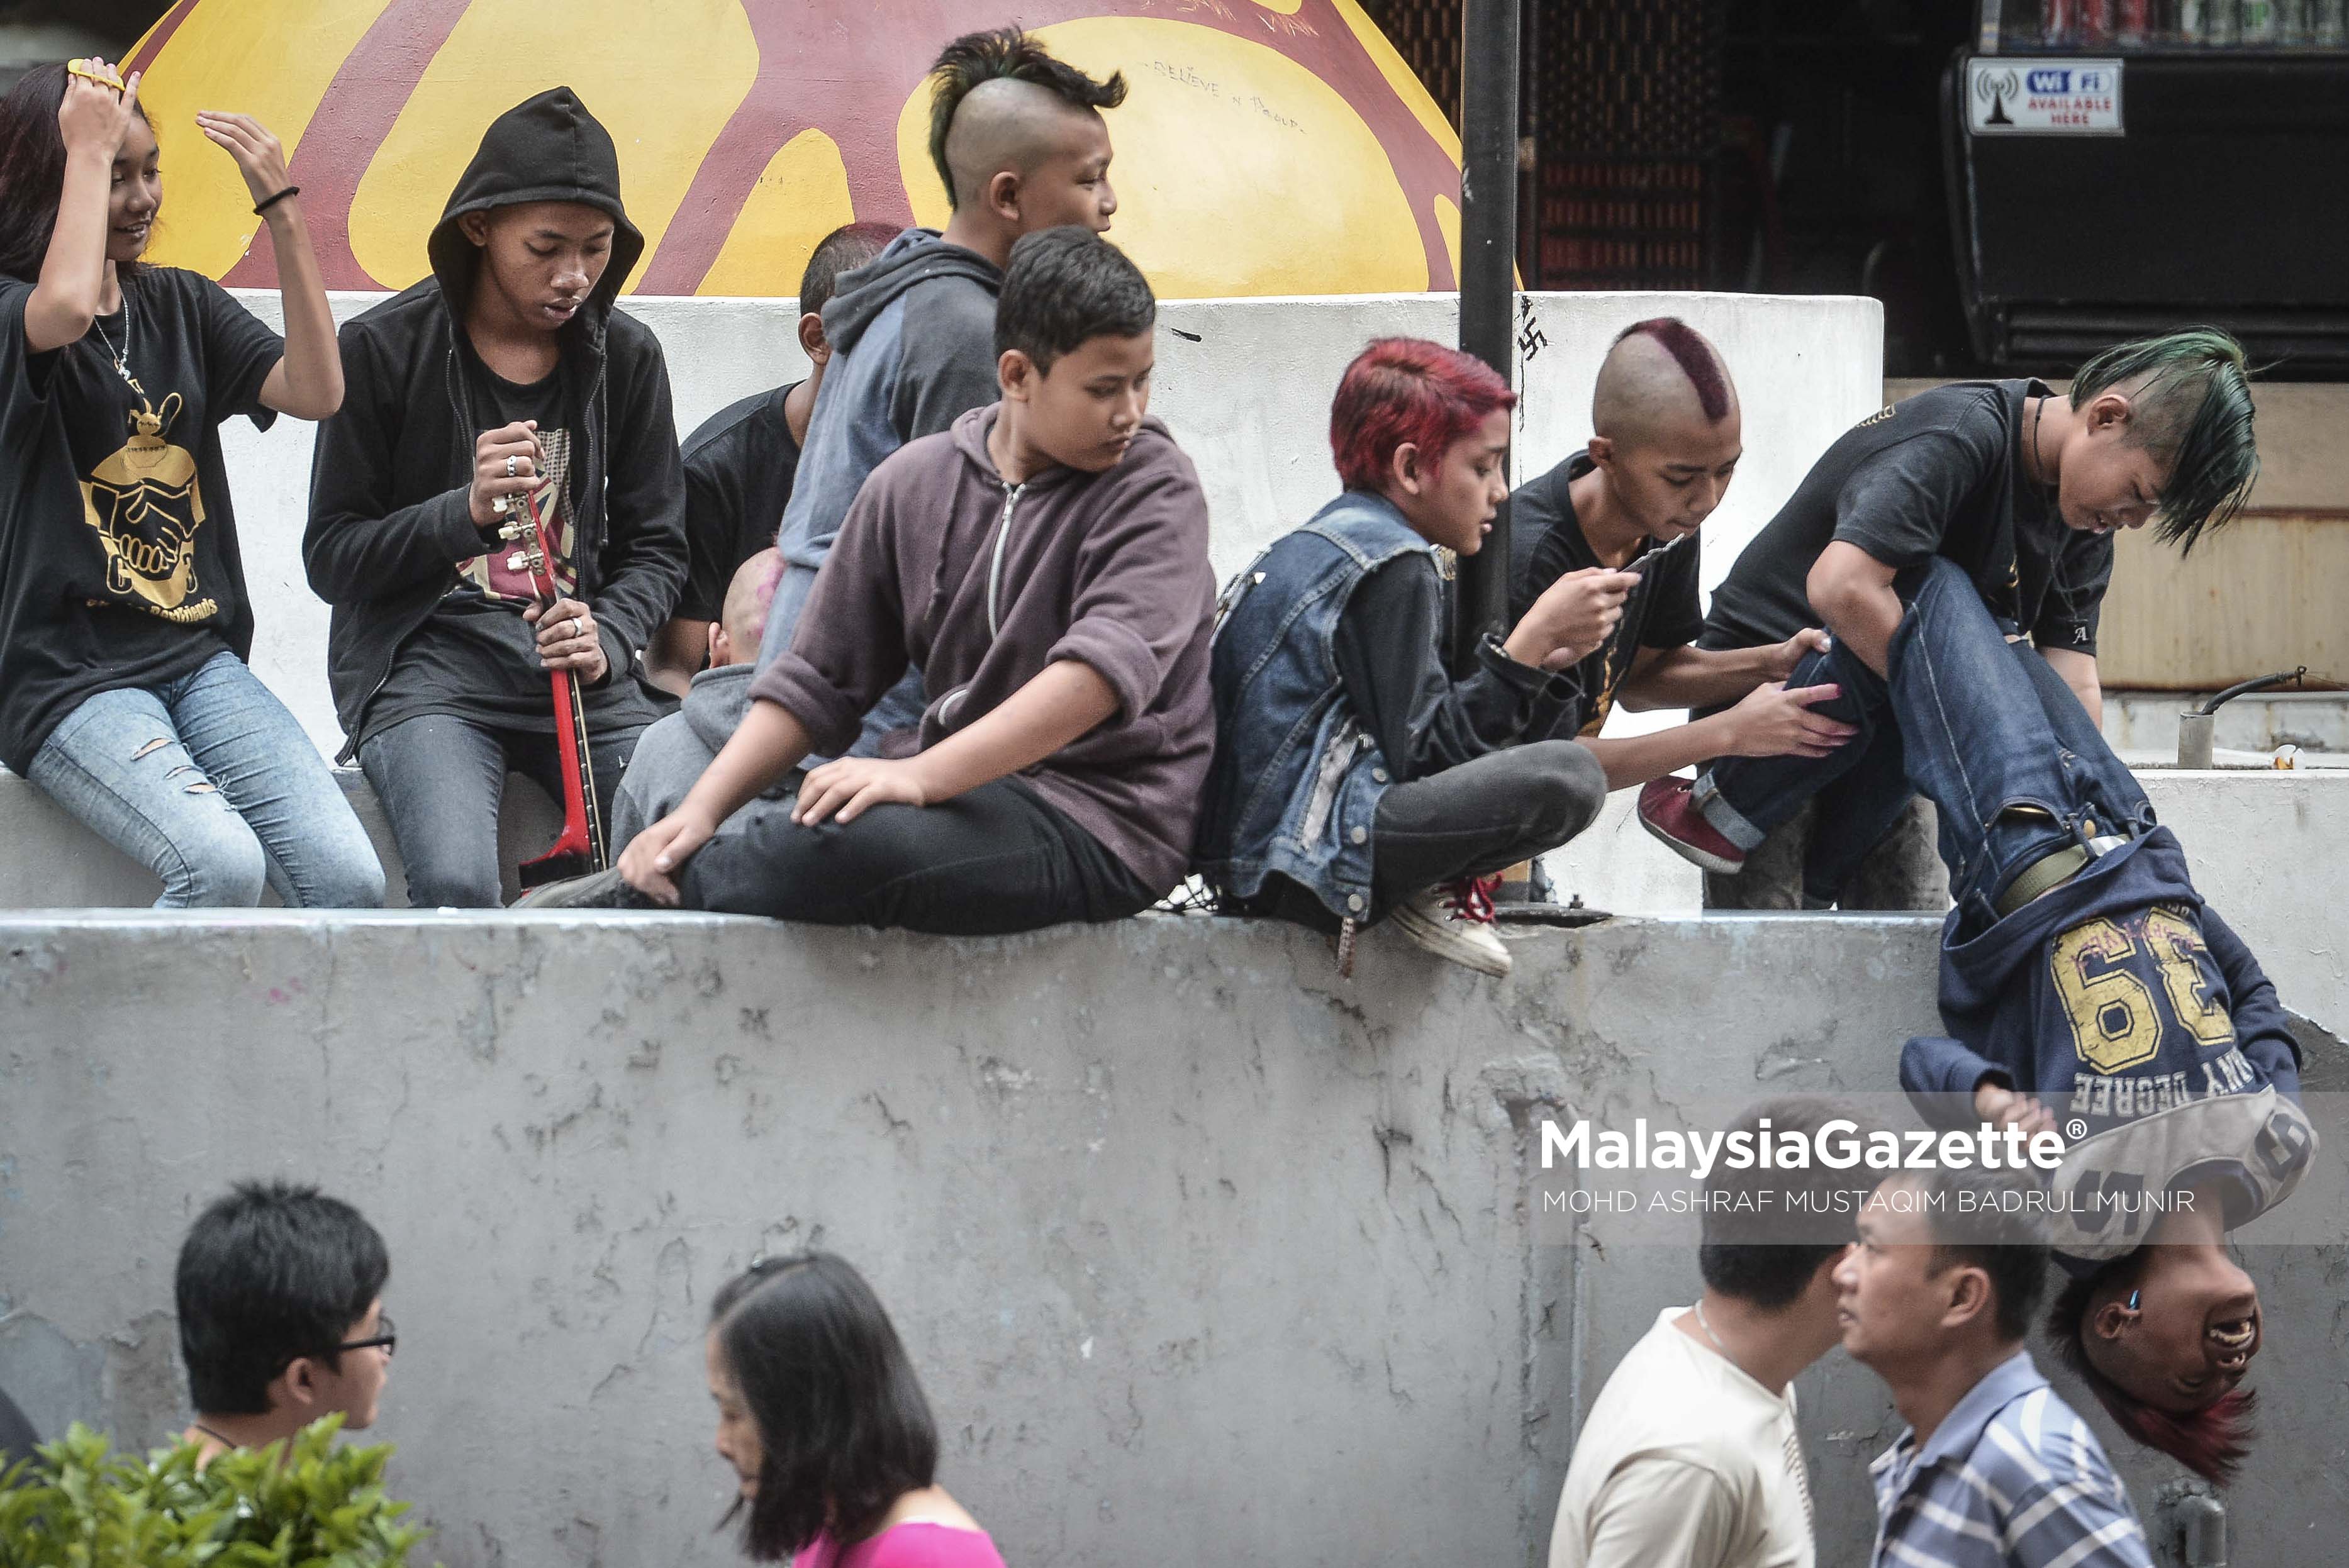 Gelagat remaja 'Punk' yang bermain sesama mereka tanpa menghiraukan orang awam di kaki lima ketika tinjauan lensa Malaysia Gazette sempena cuti umum Hari Wilayah Persekutuan di Bukit Bintang. foto ASHRAF MUSTAQIM BADRUL MUNIR, 01 FEBRUARI 2017.